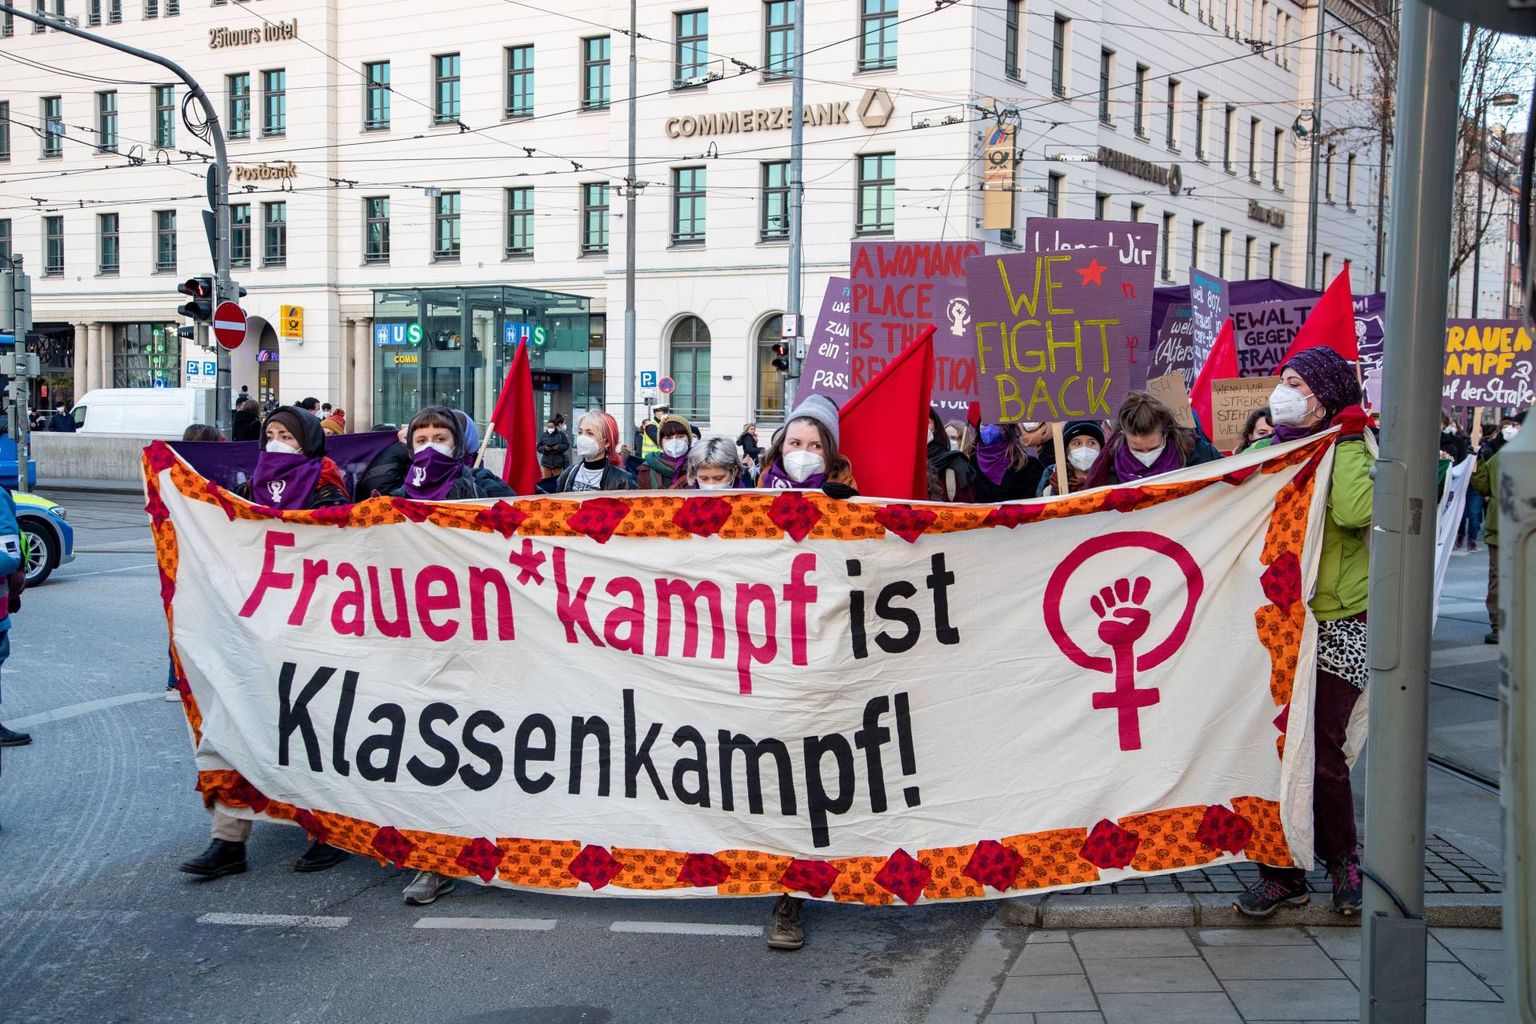 Need neli nädalat tagasi Münchenis soolise palgalõhe, ühiskondliku seksismi ja naistevastase vägivalla vastu meelt avaldanud inimesed leiavad, et «Naiste võitlus on klassivõitlus».